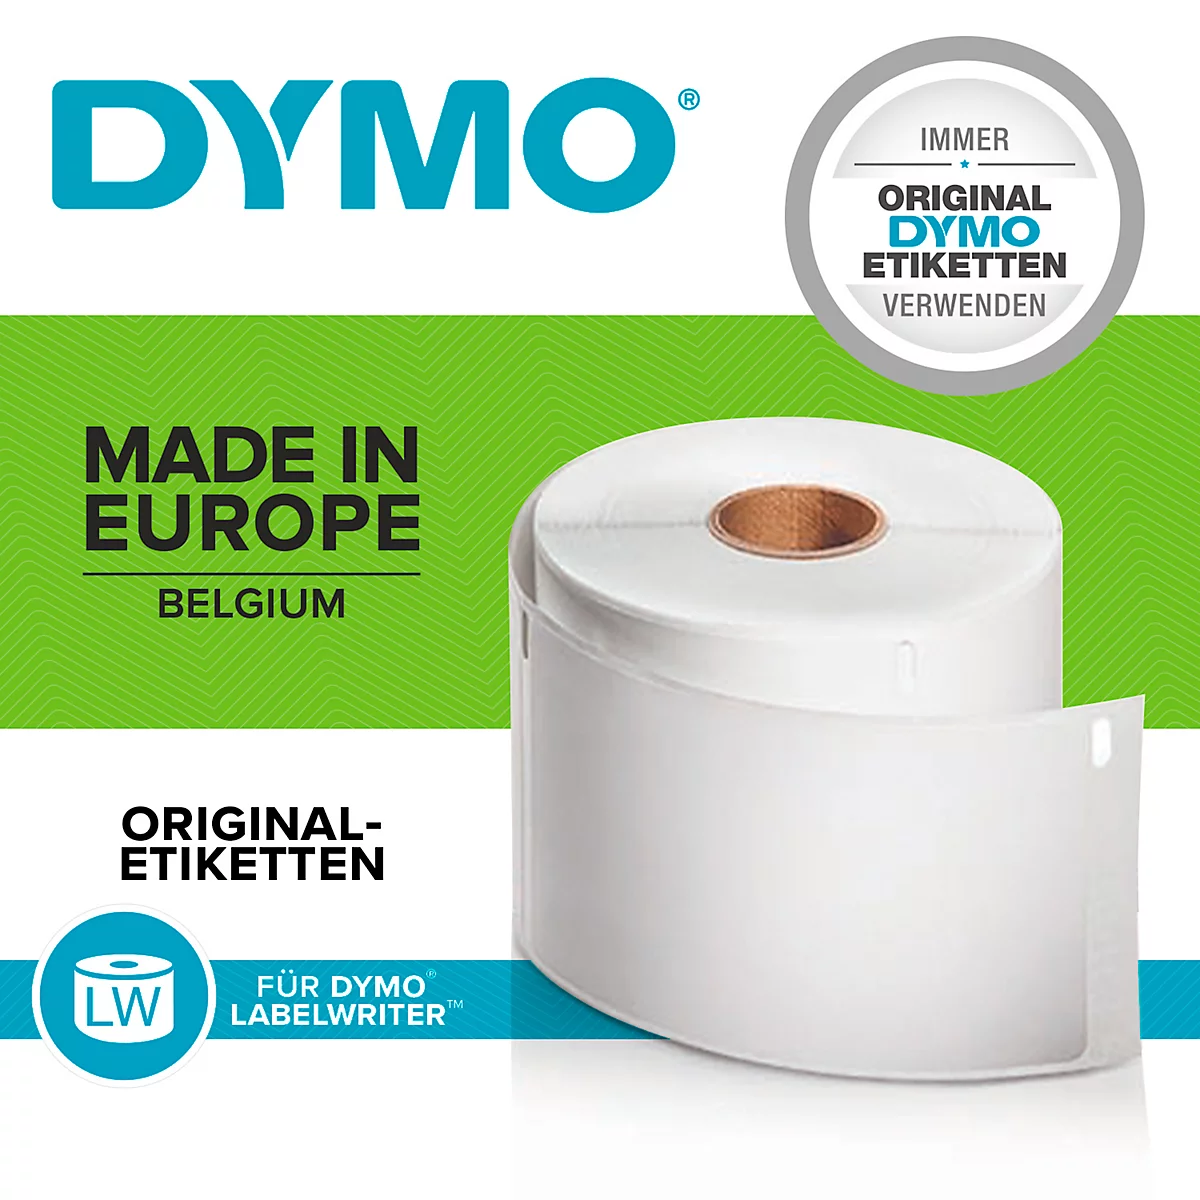 DYMO LabelWriter, Hängeablage-Etiketten, permanent, 50 x 12 mm, 1 x 220 Stück, weiss